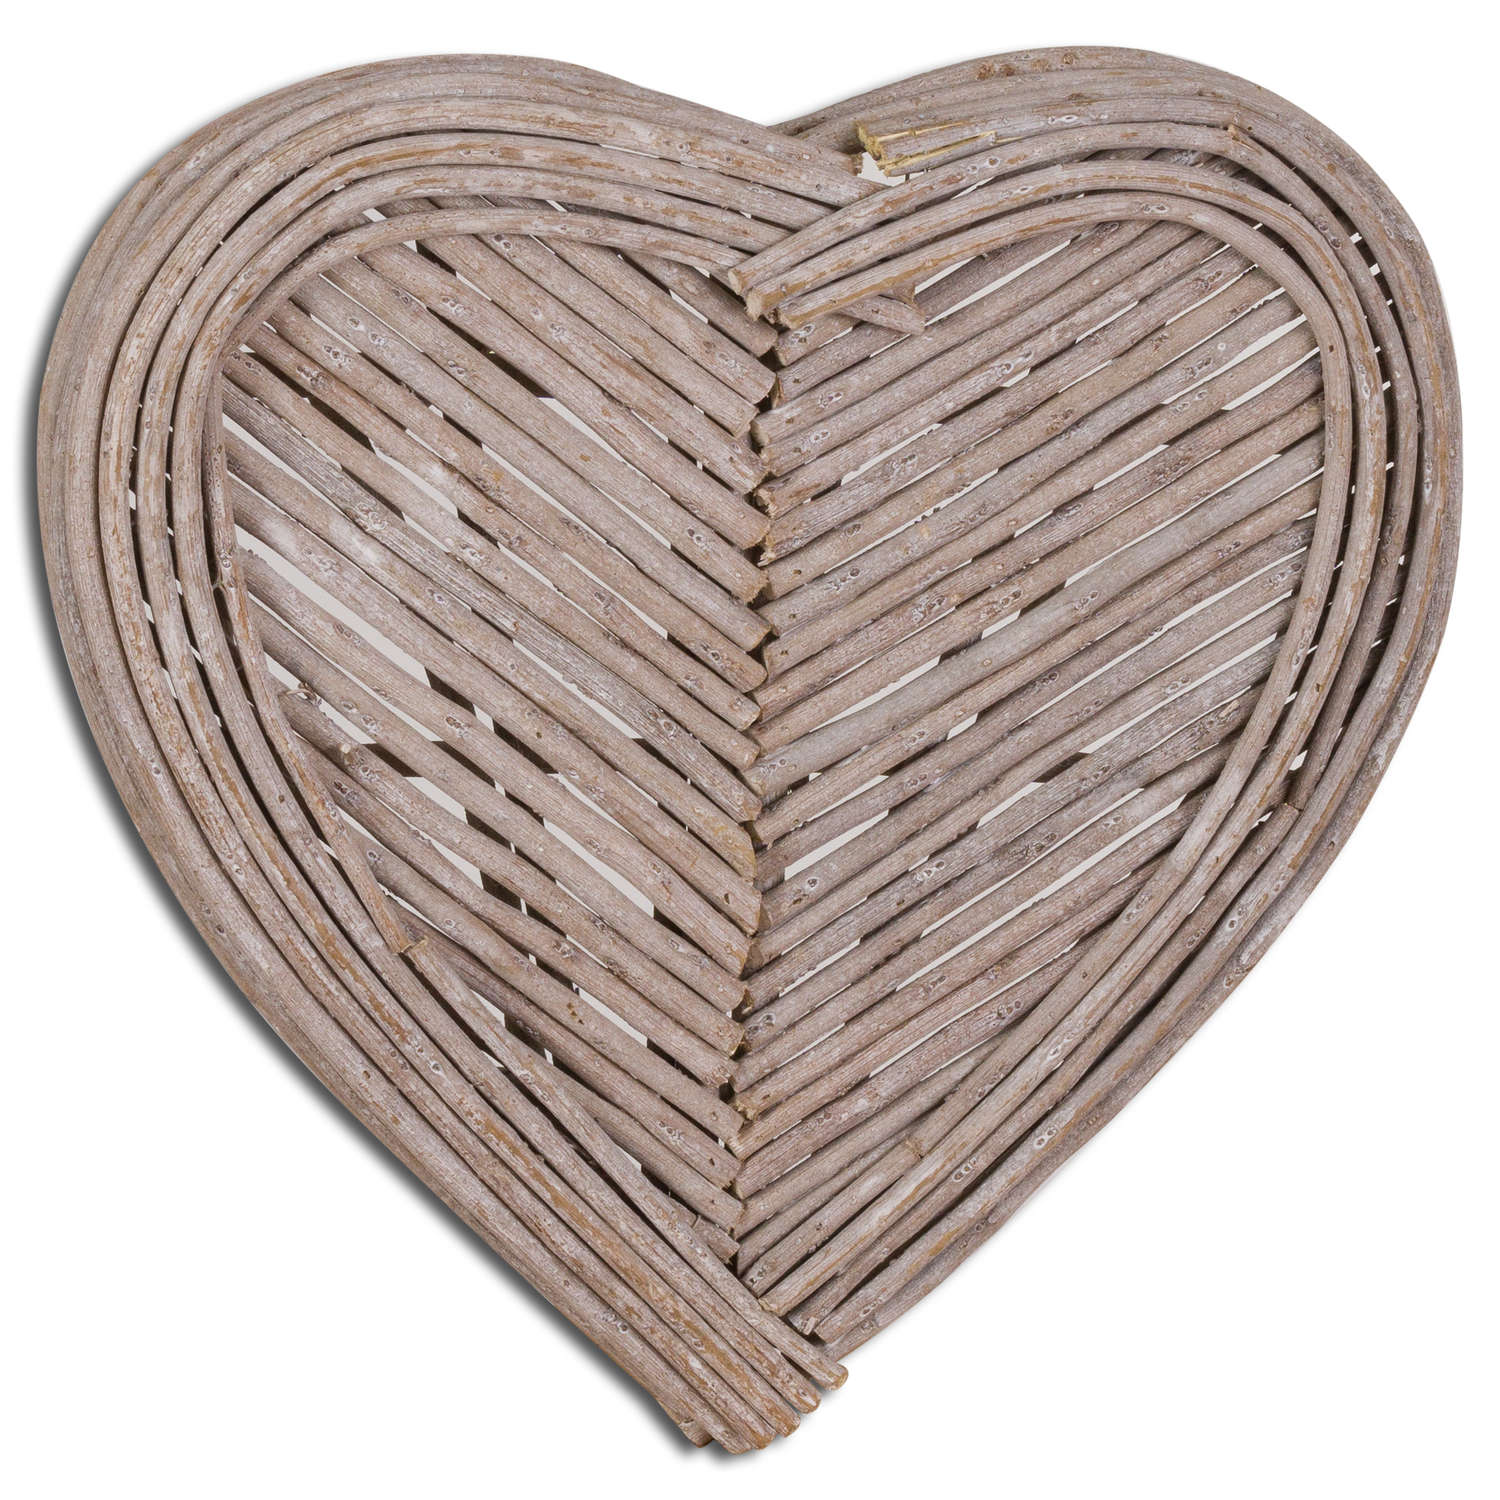 40cm Small Heart Wicker Wall Art - Image 1